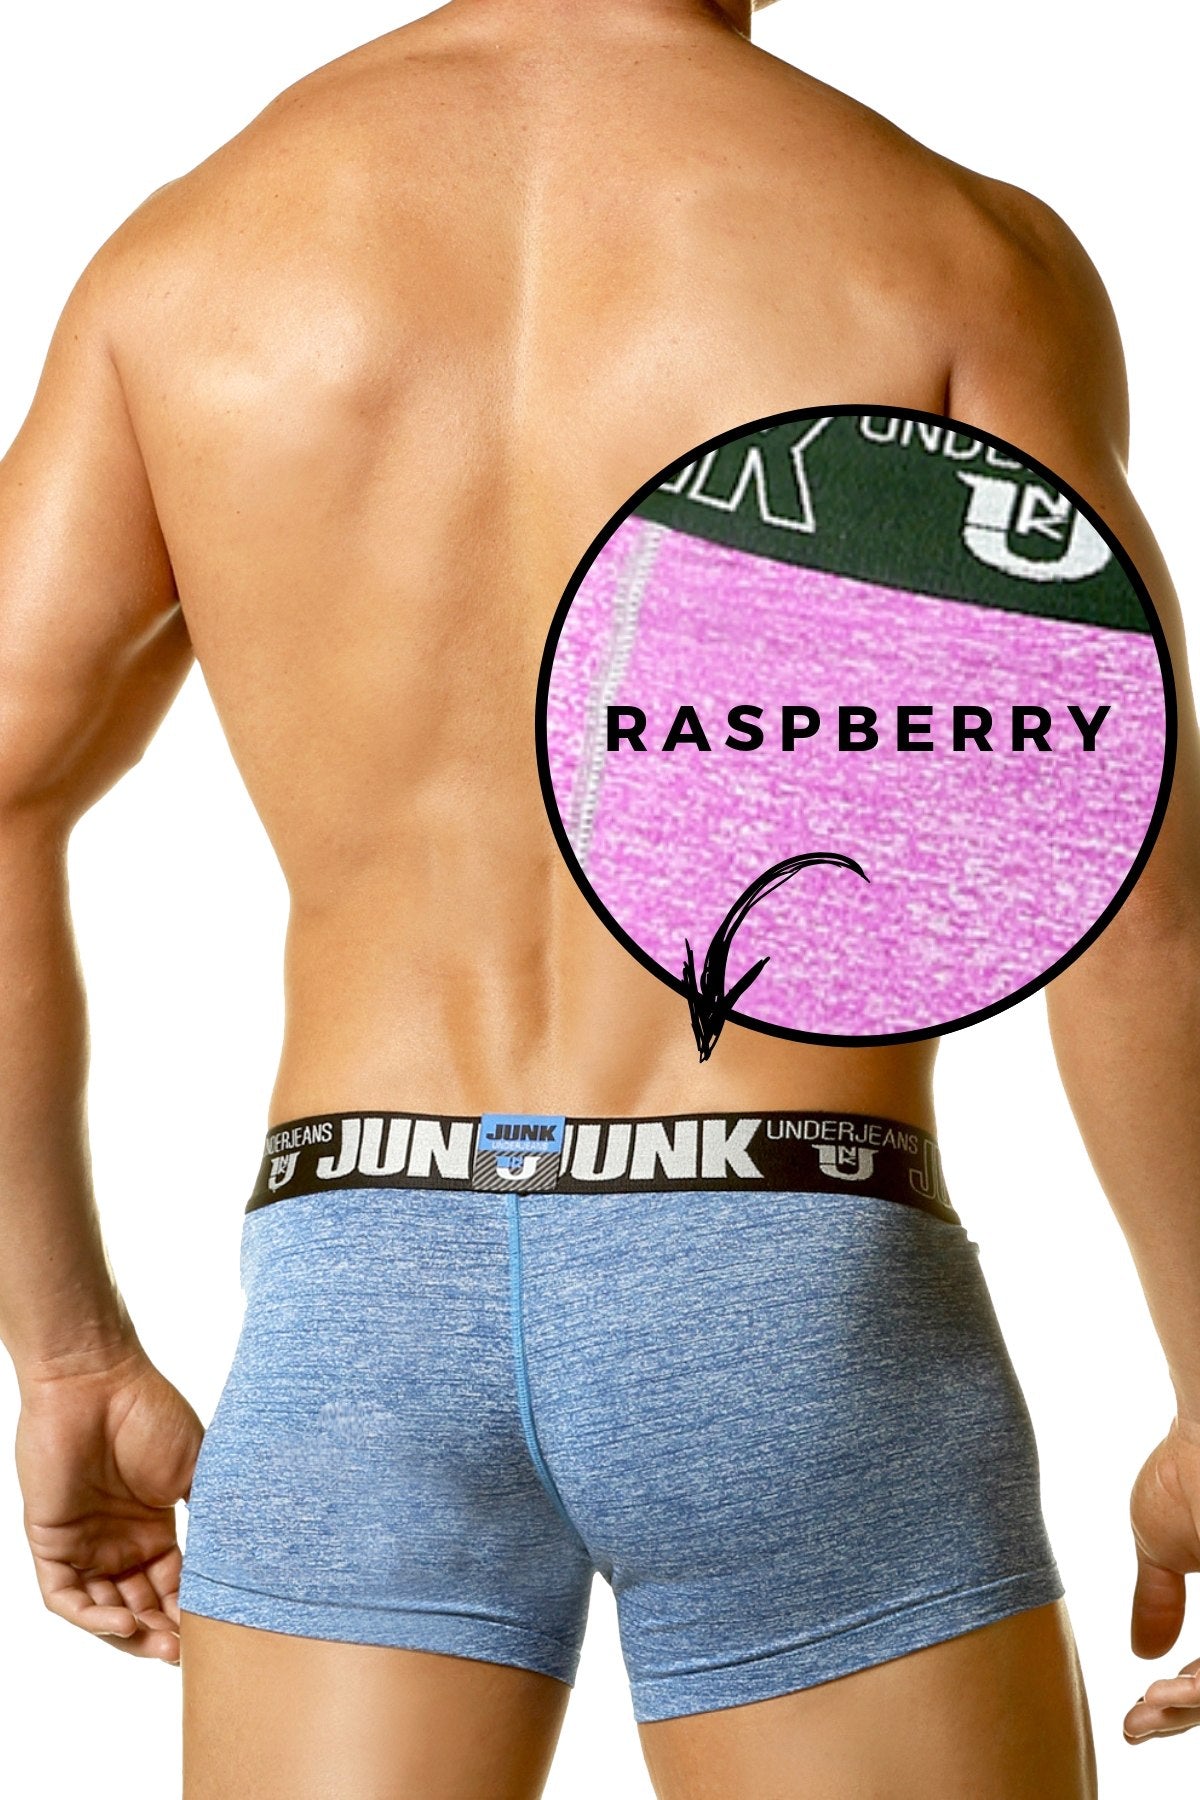 Junk Underjeans Raspberry Sweat Trunk